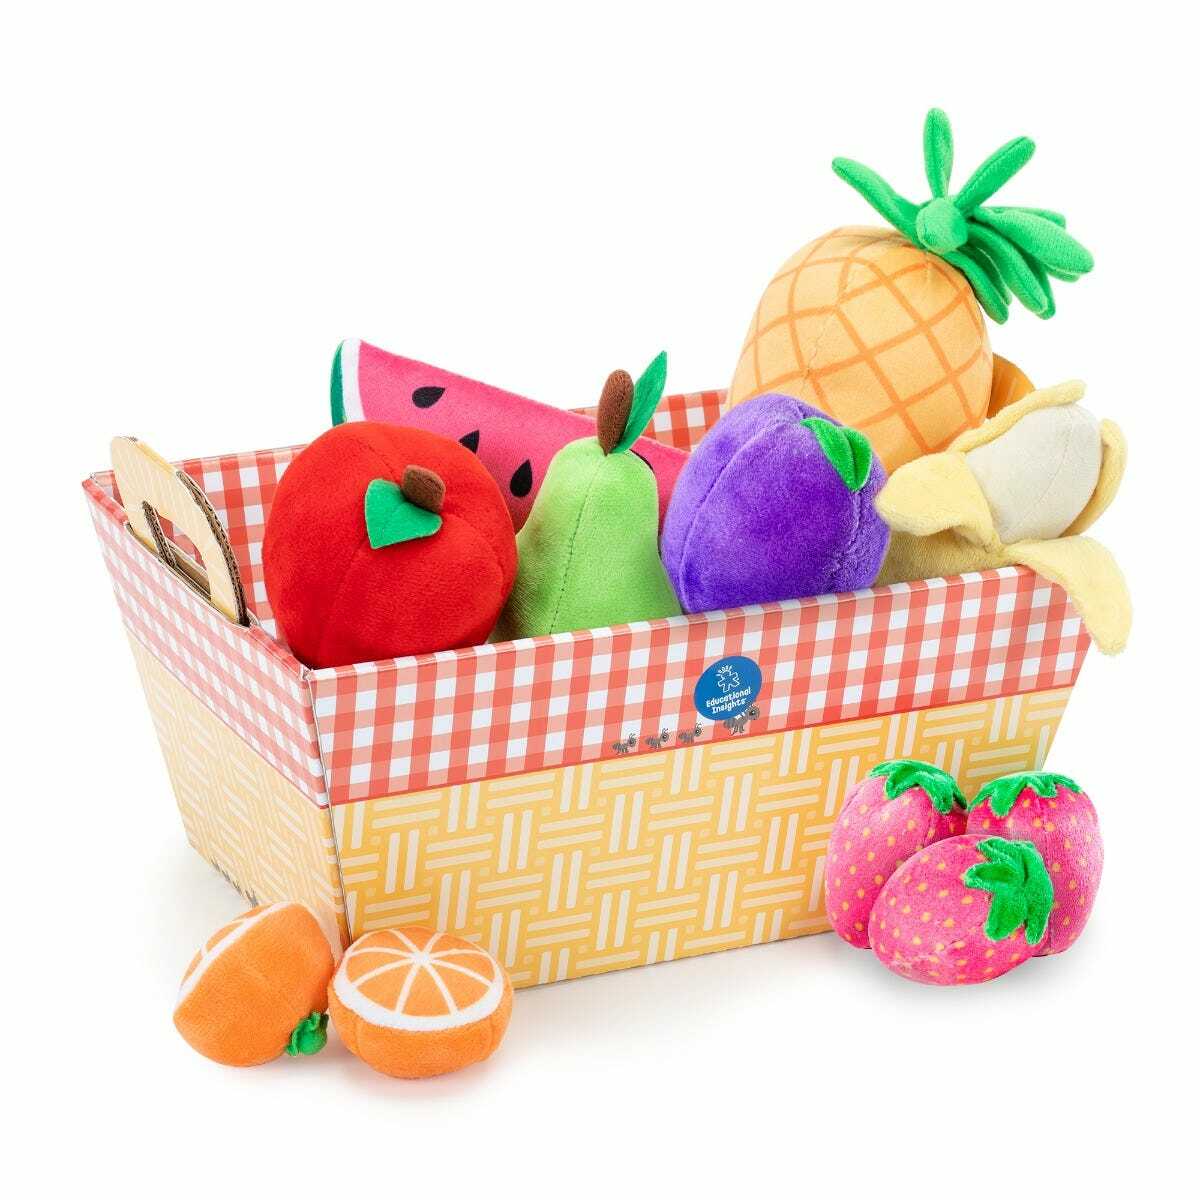 Фруктовый 12 1. Набор фруктов. Learning resources корзина с фруктами. Текстильные фрукты. Plush игровой набор фрукты.